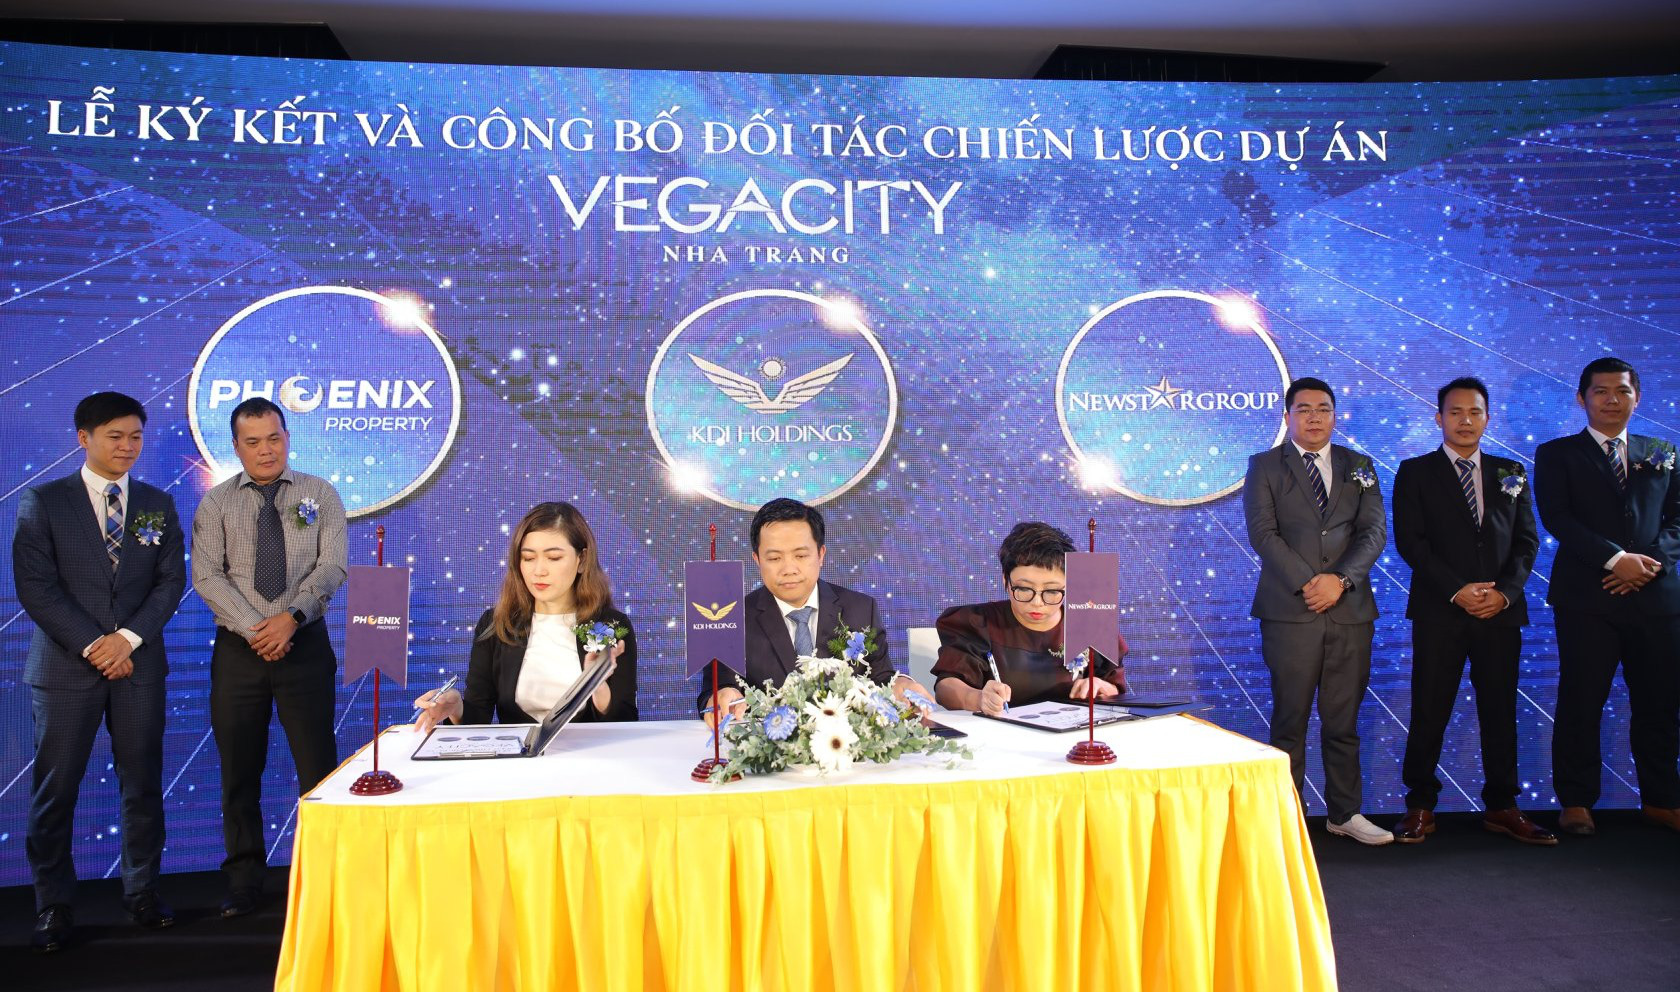 Dự án Vega City Nha Trang công bố đối tác chiến lược hàng đầu - Ảnh 1.